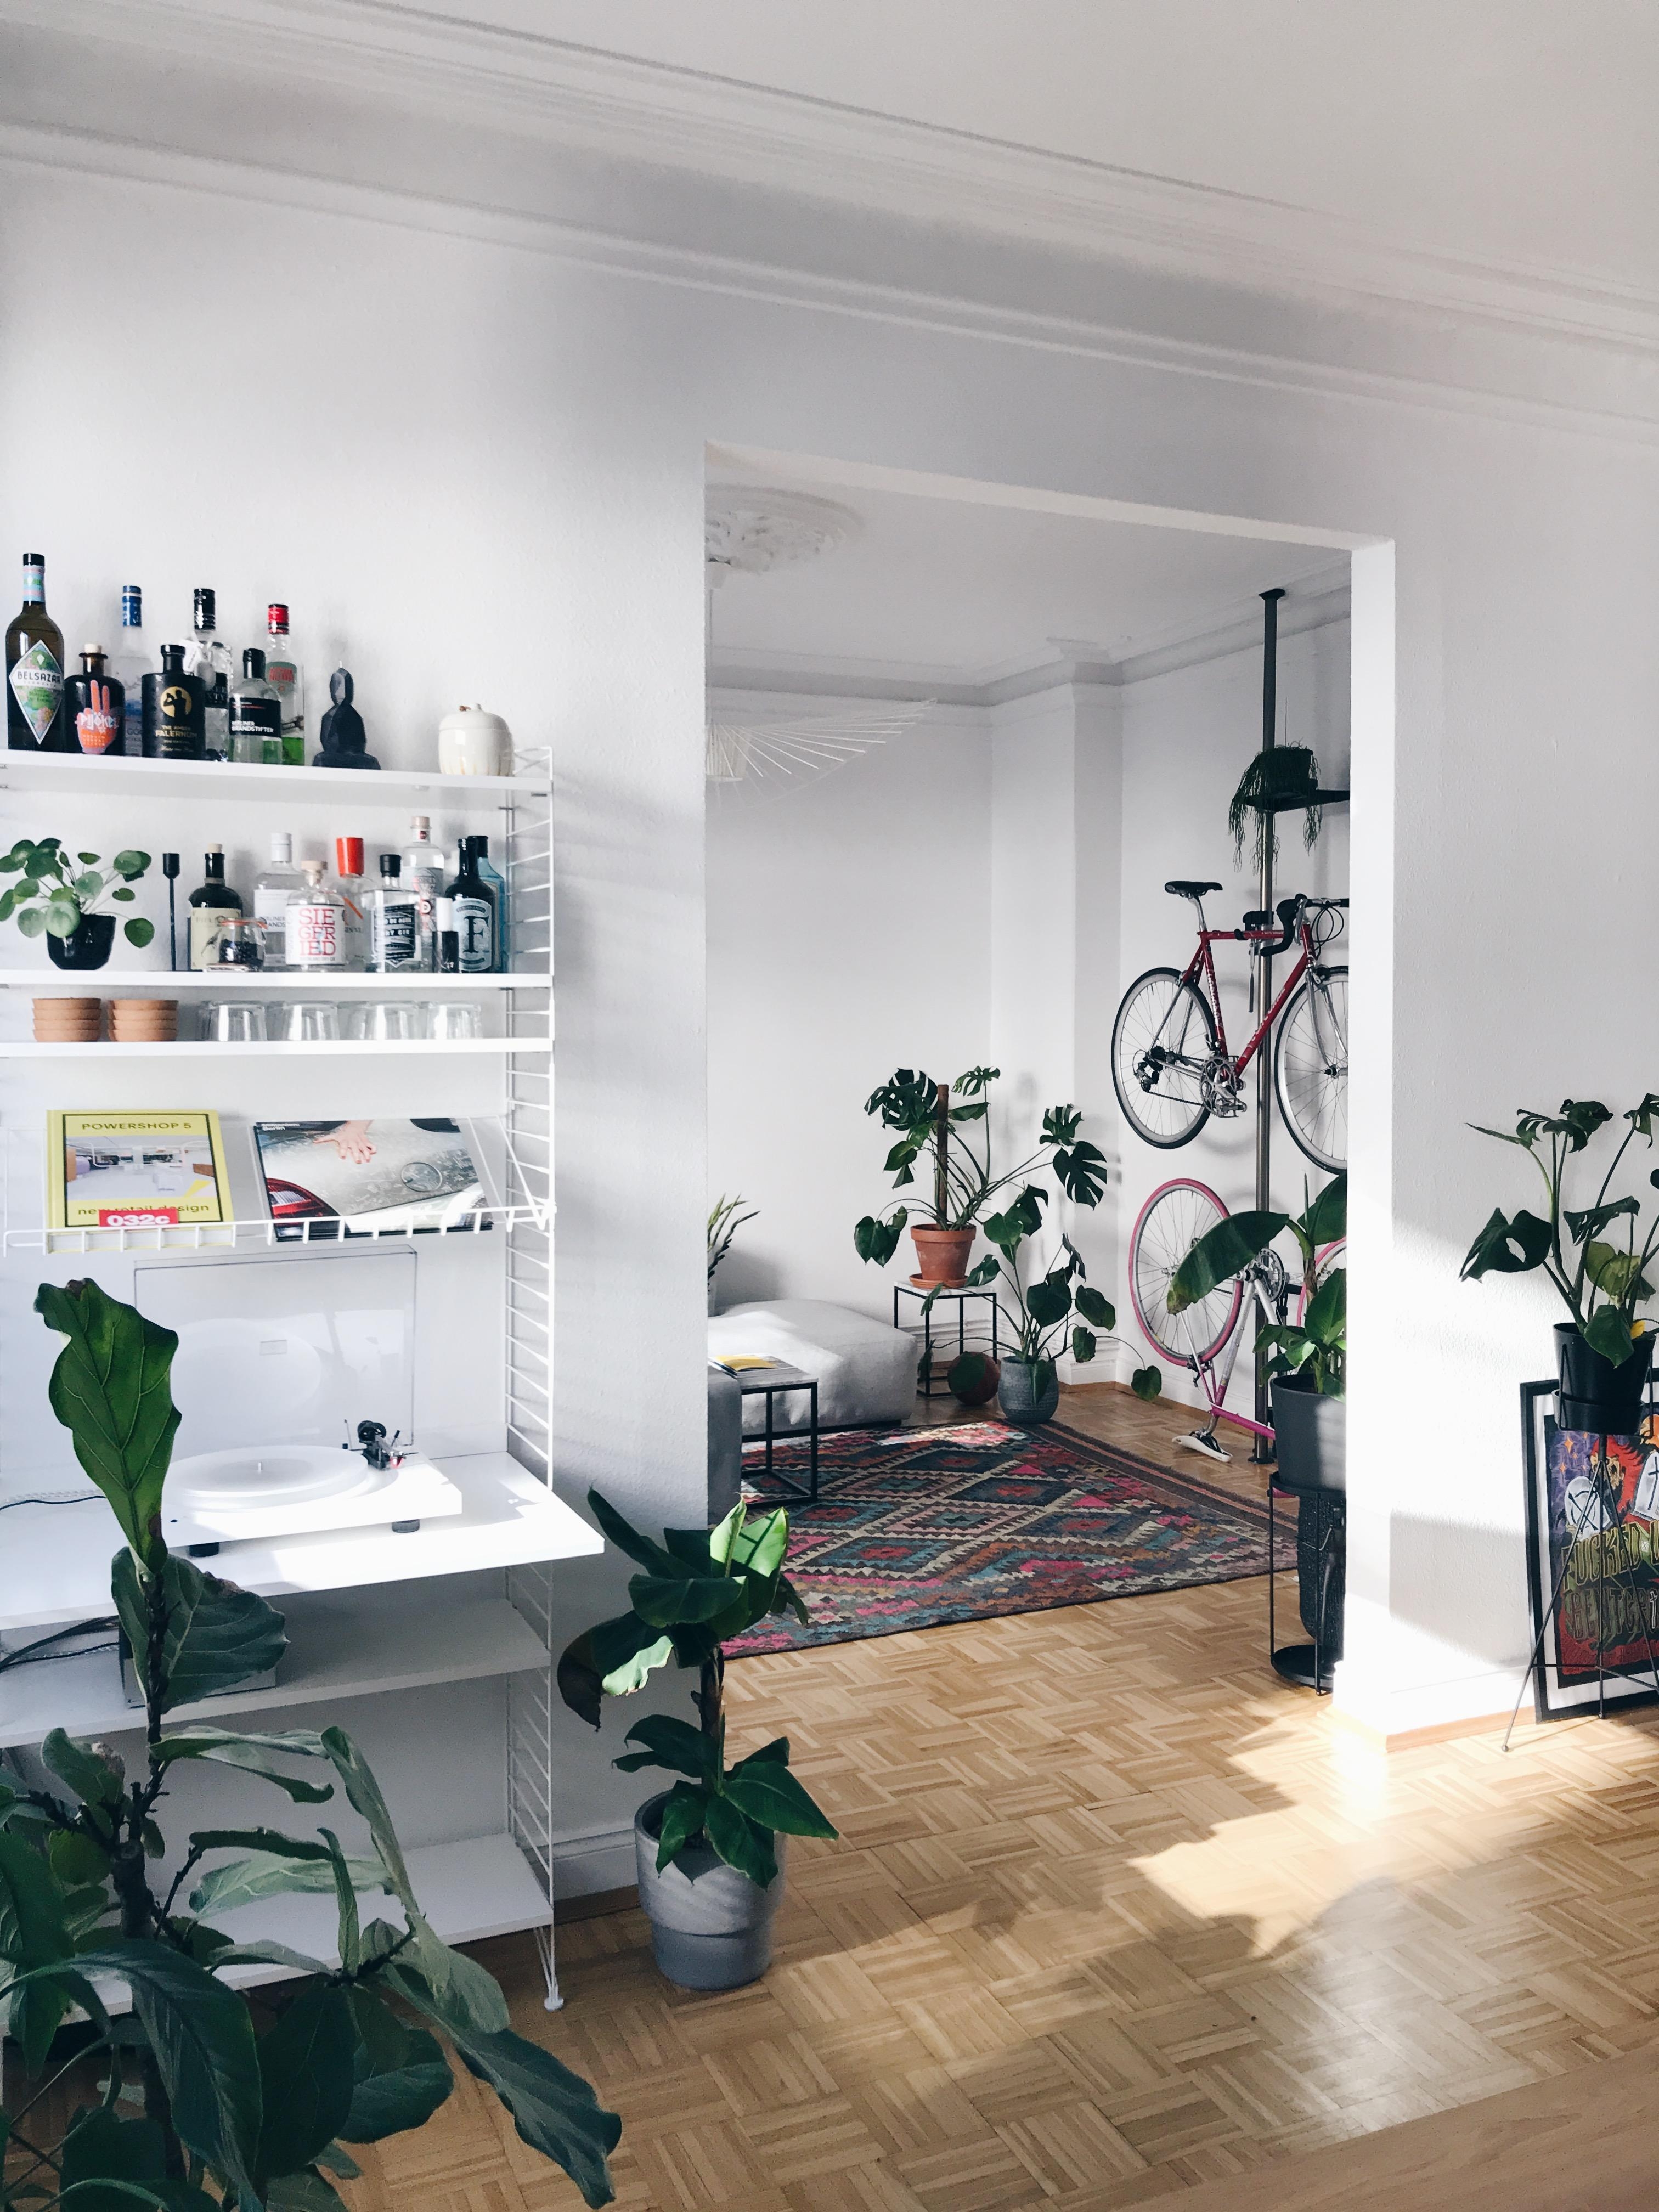 Neue Aussicht! #livingroom #shelfie #urbanjungle #stringfurniture #minibar #gin #bikes #altbau #plattenspieler #plants 